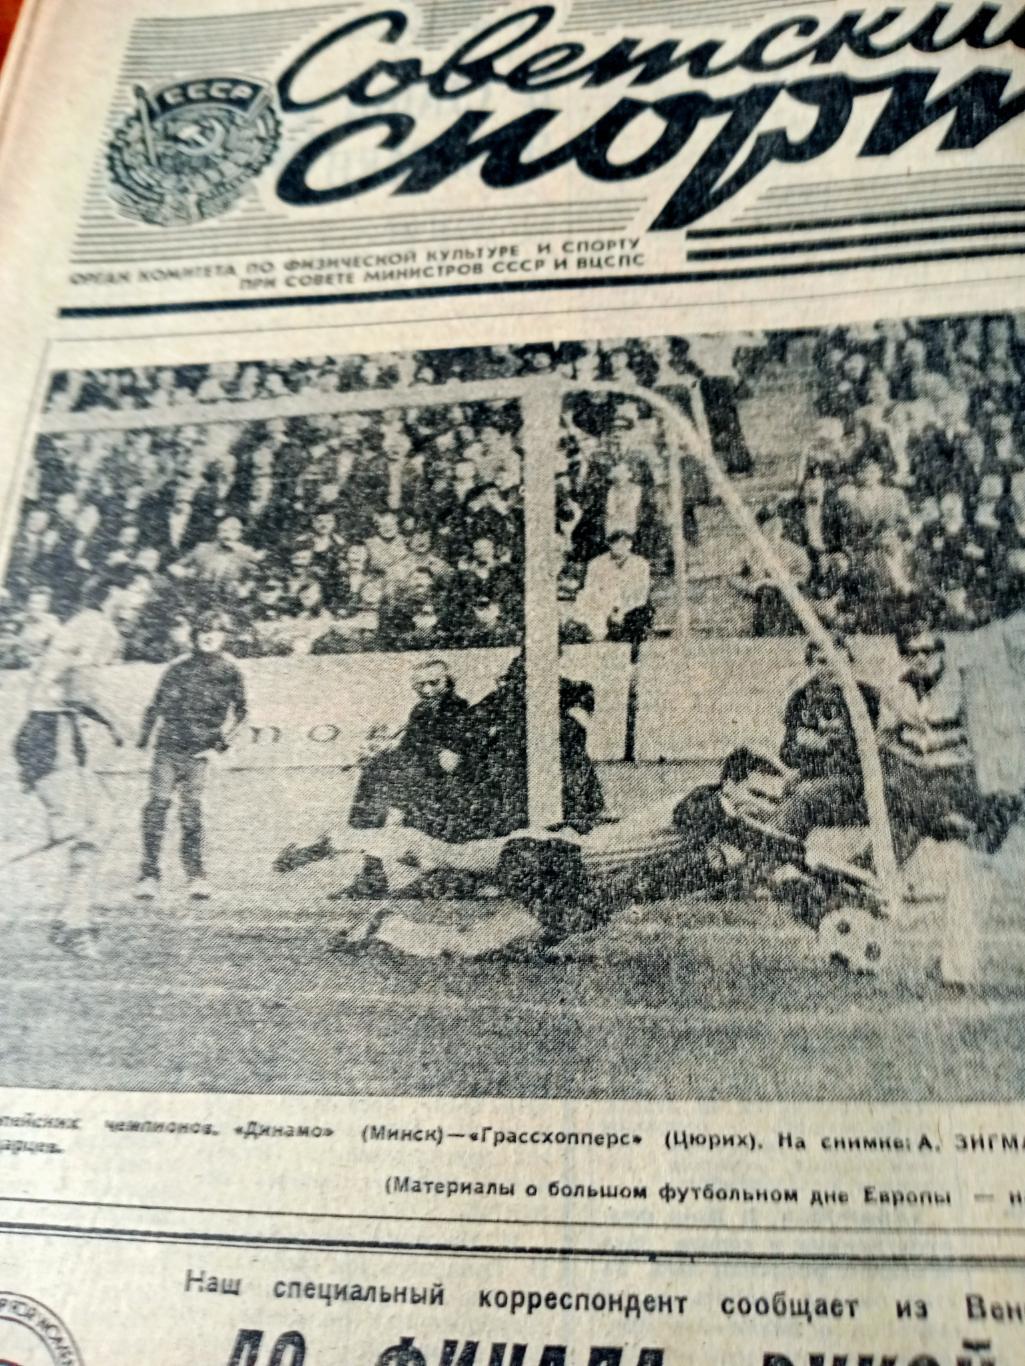 Еврокубки. Советский спорт. 1983 год. 16 сентября